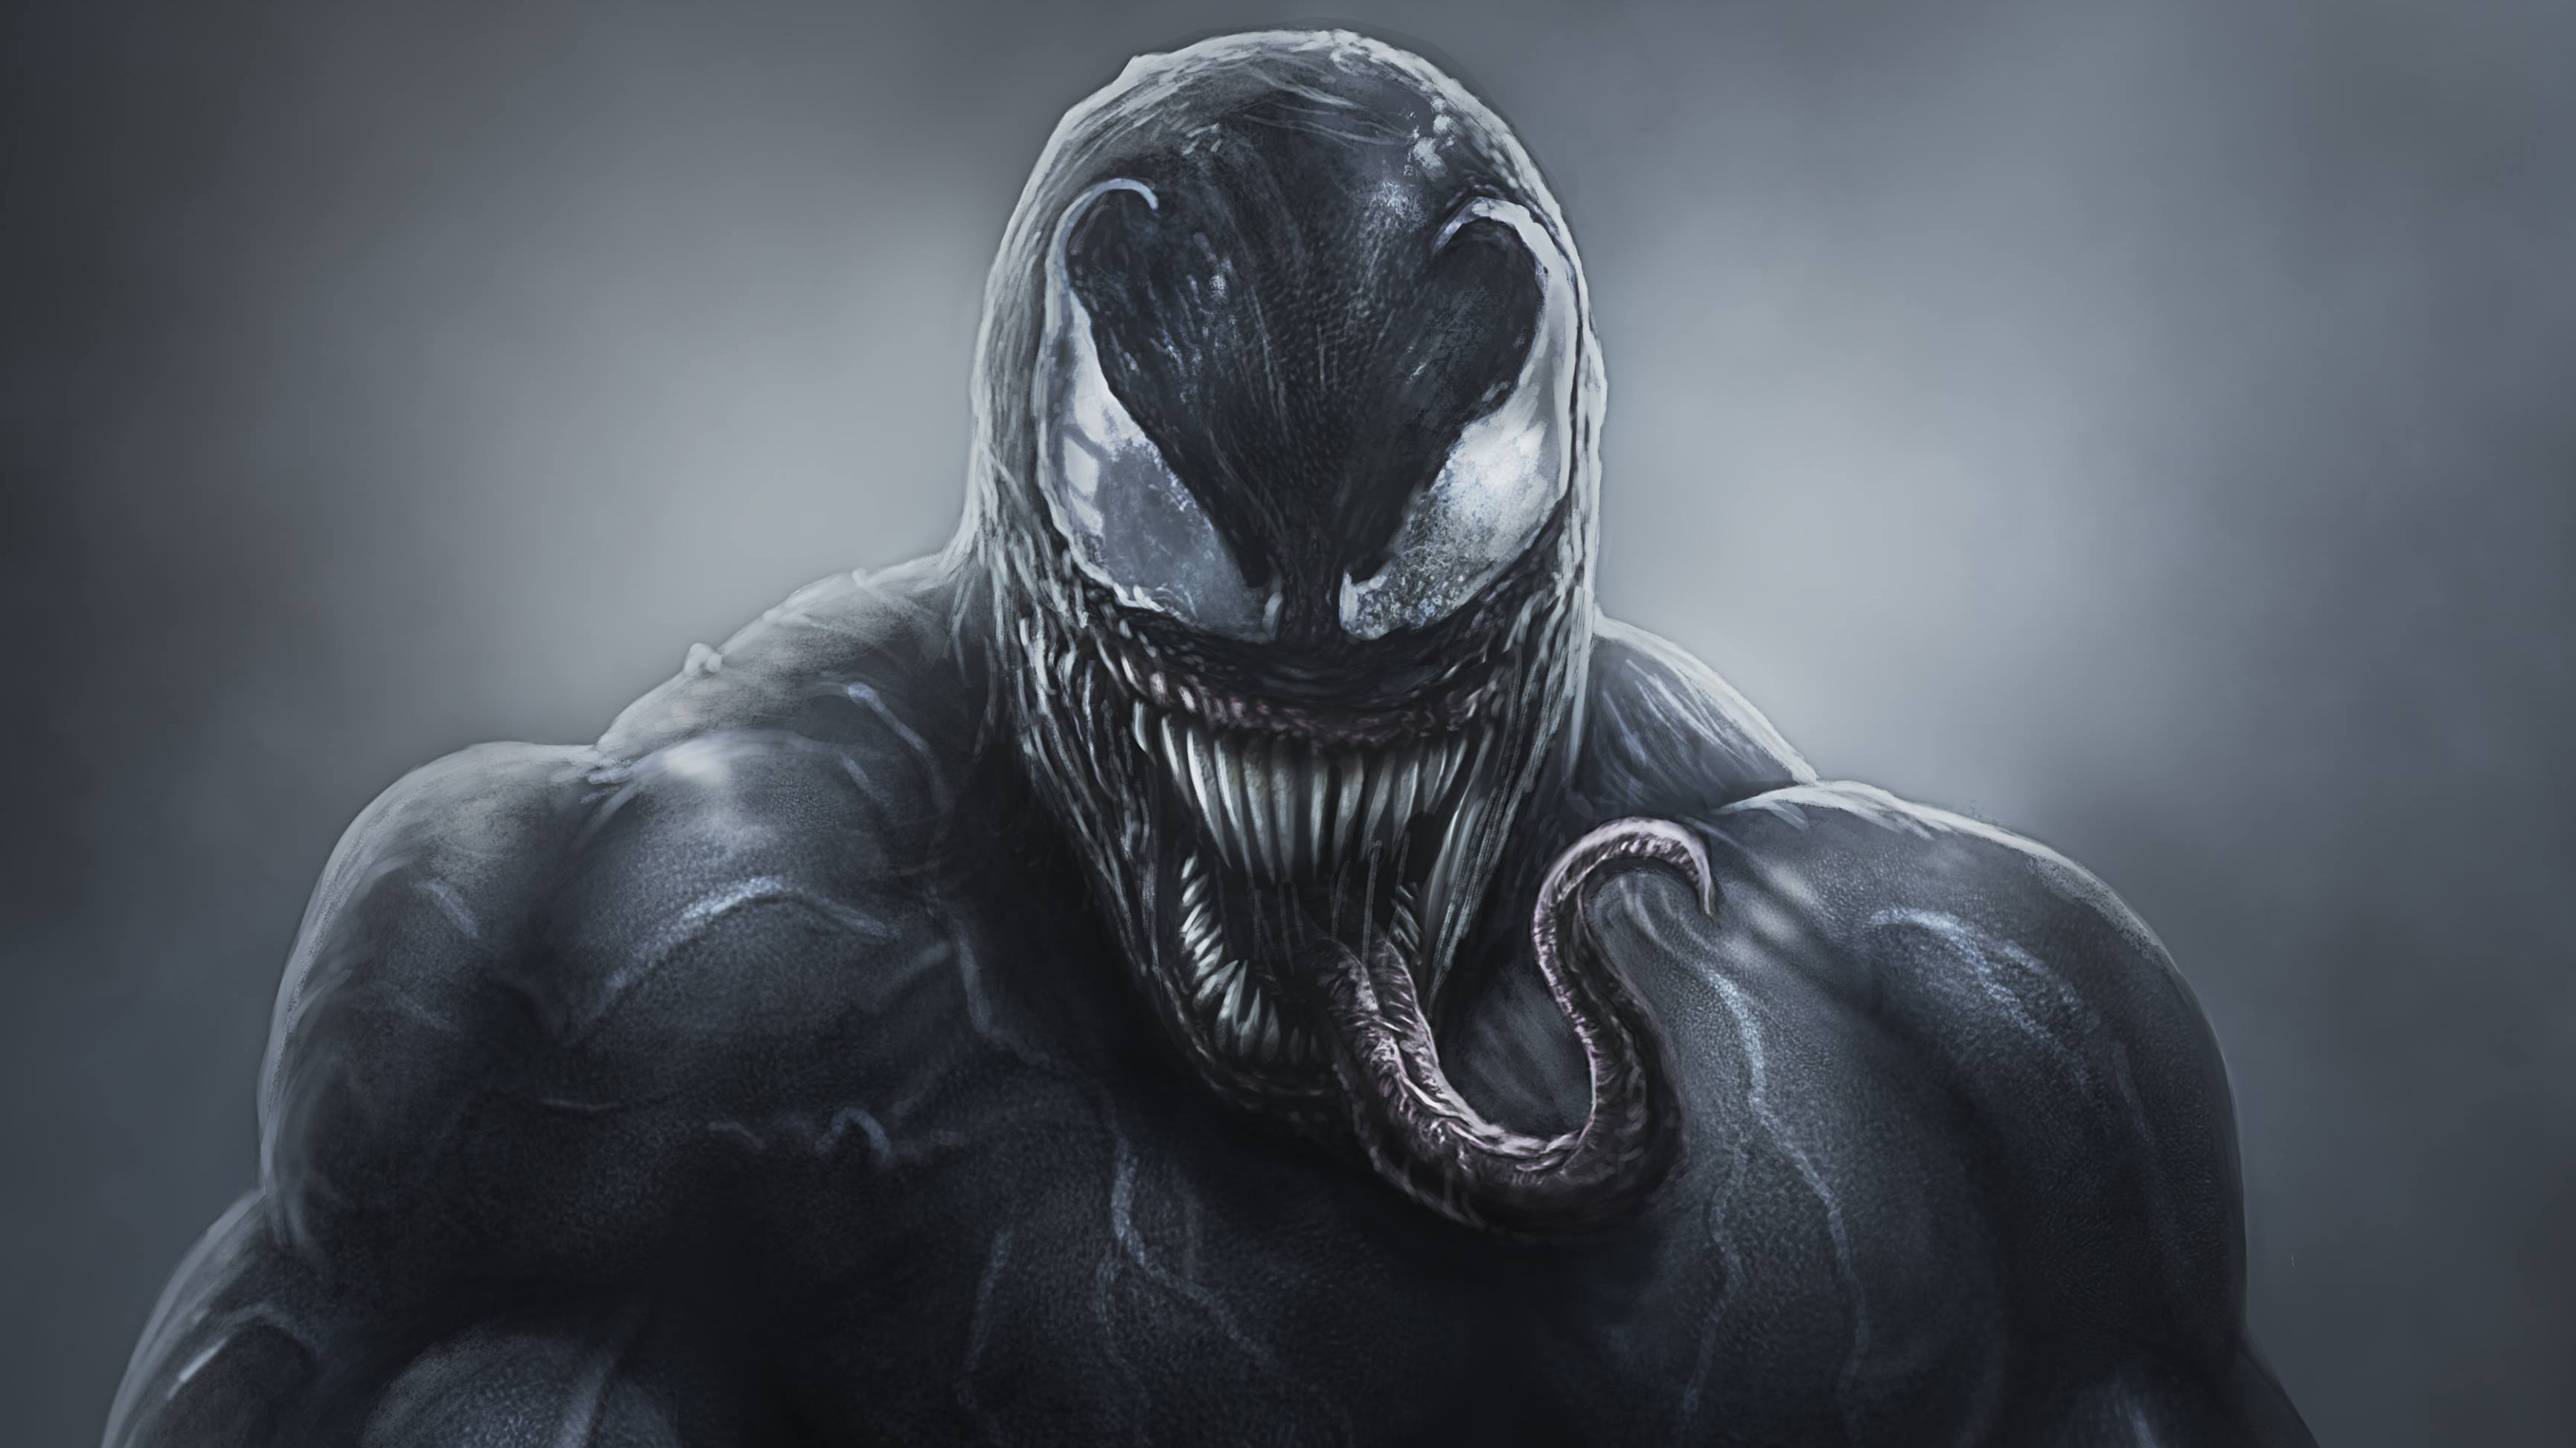  4k  Venom  Artwork 2021 HD Superheroes 4k  Wallpapers  